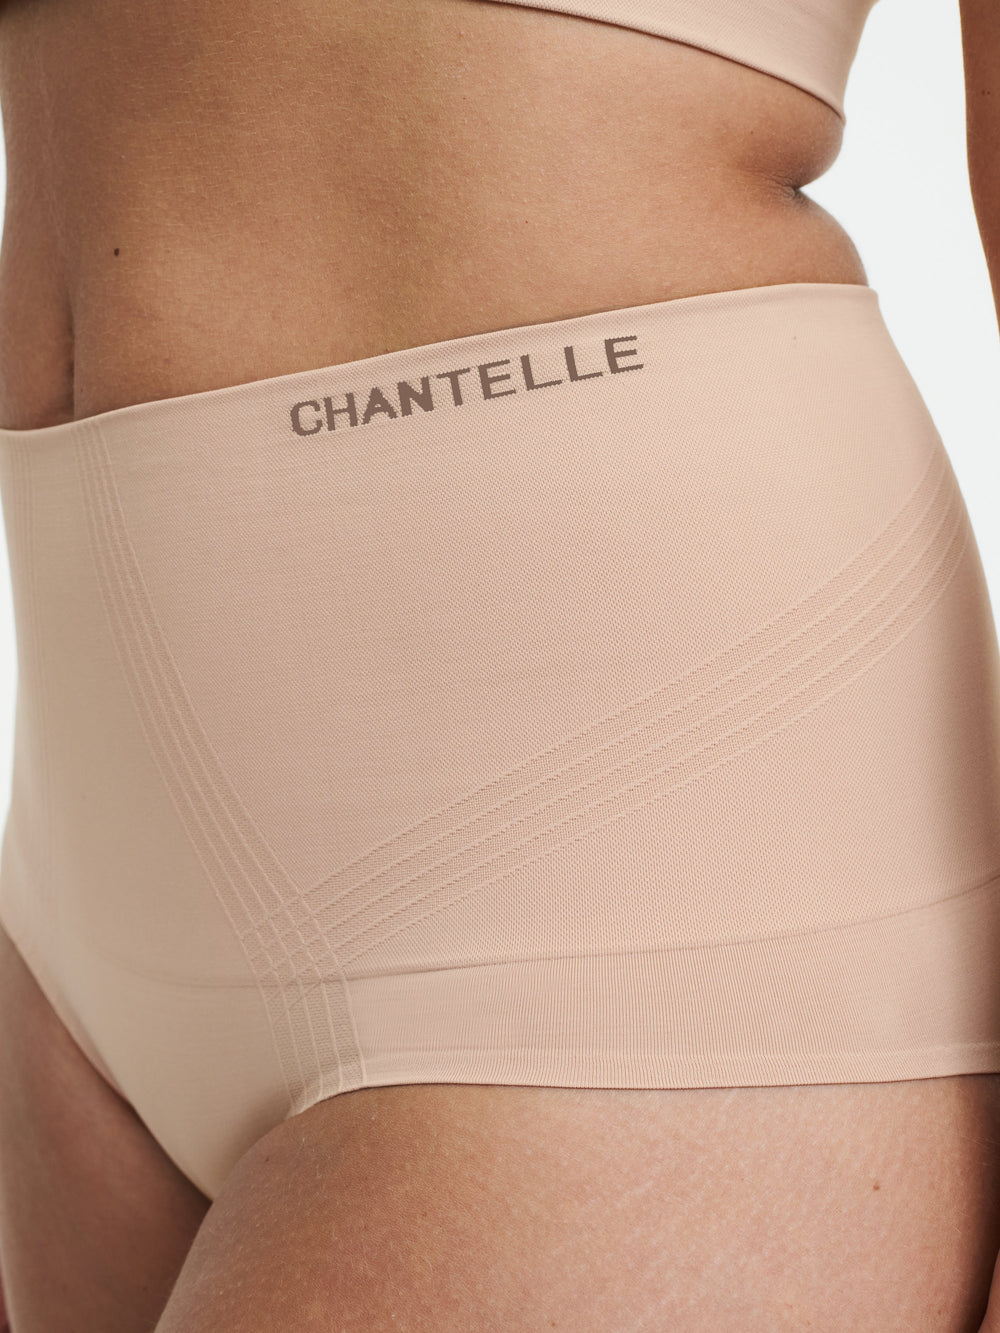 Chantelle 光滑舒適塑形高腰全套三角褲 - Sirocco 全套三角褲 Chantelle